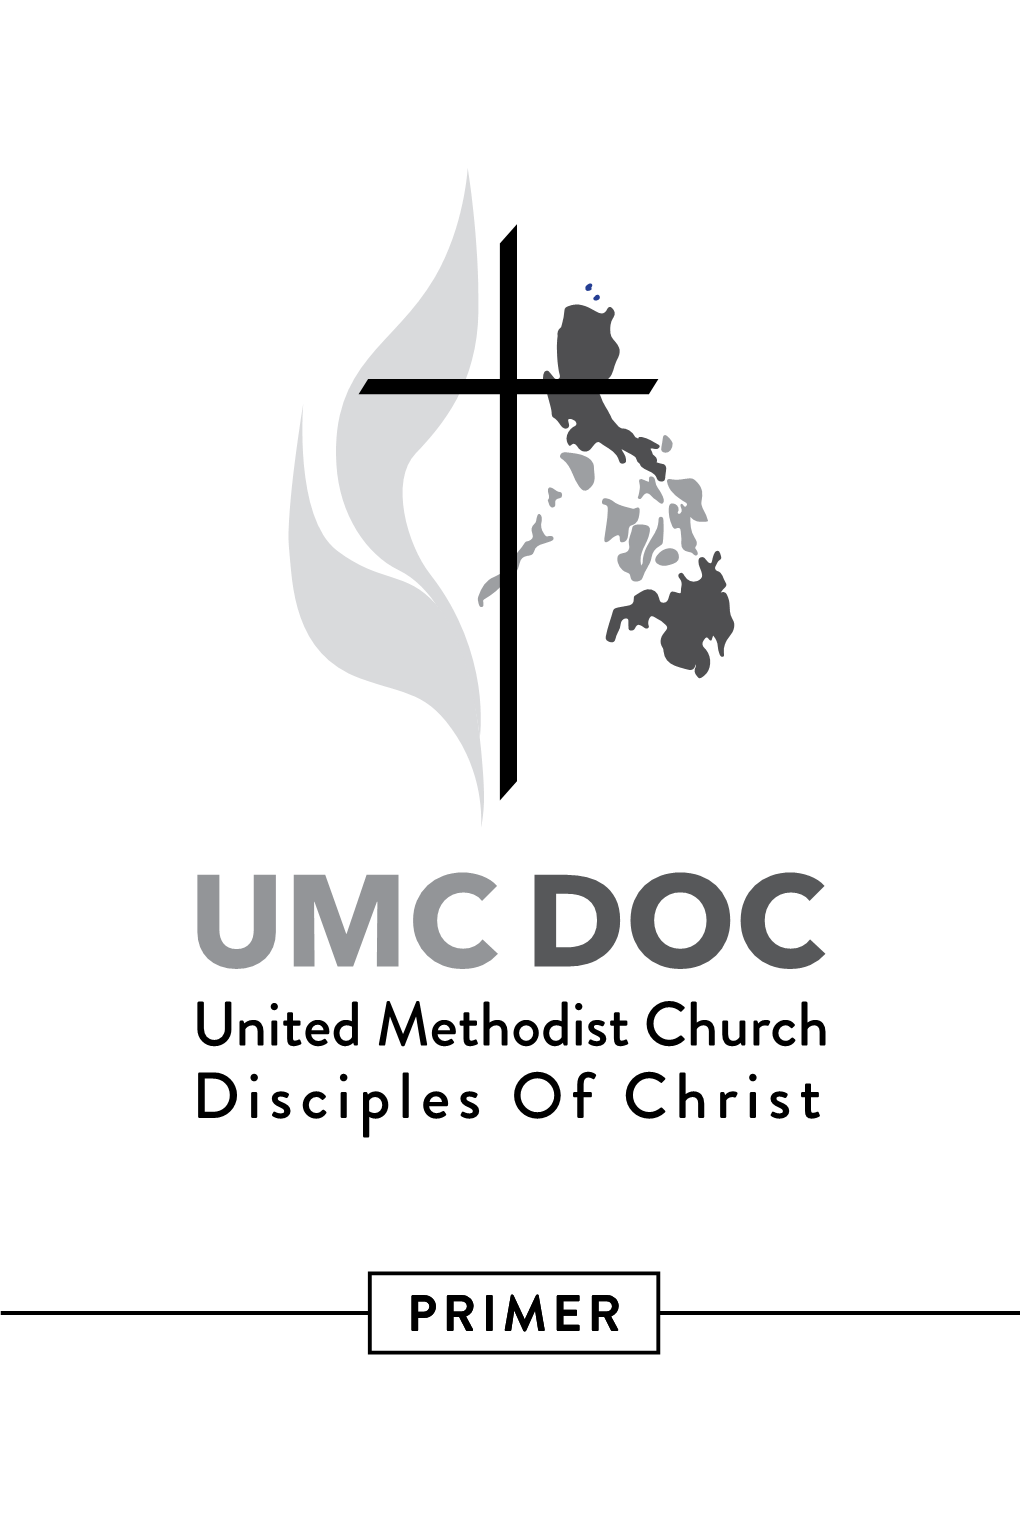 Download UMC DOC Primer